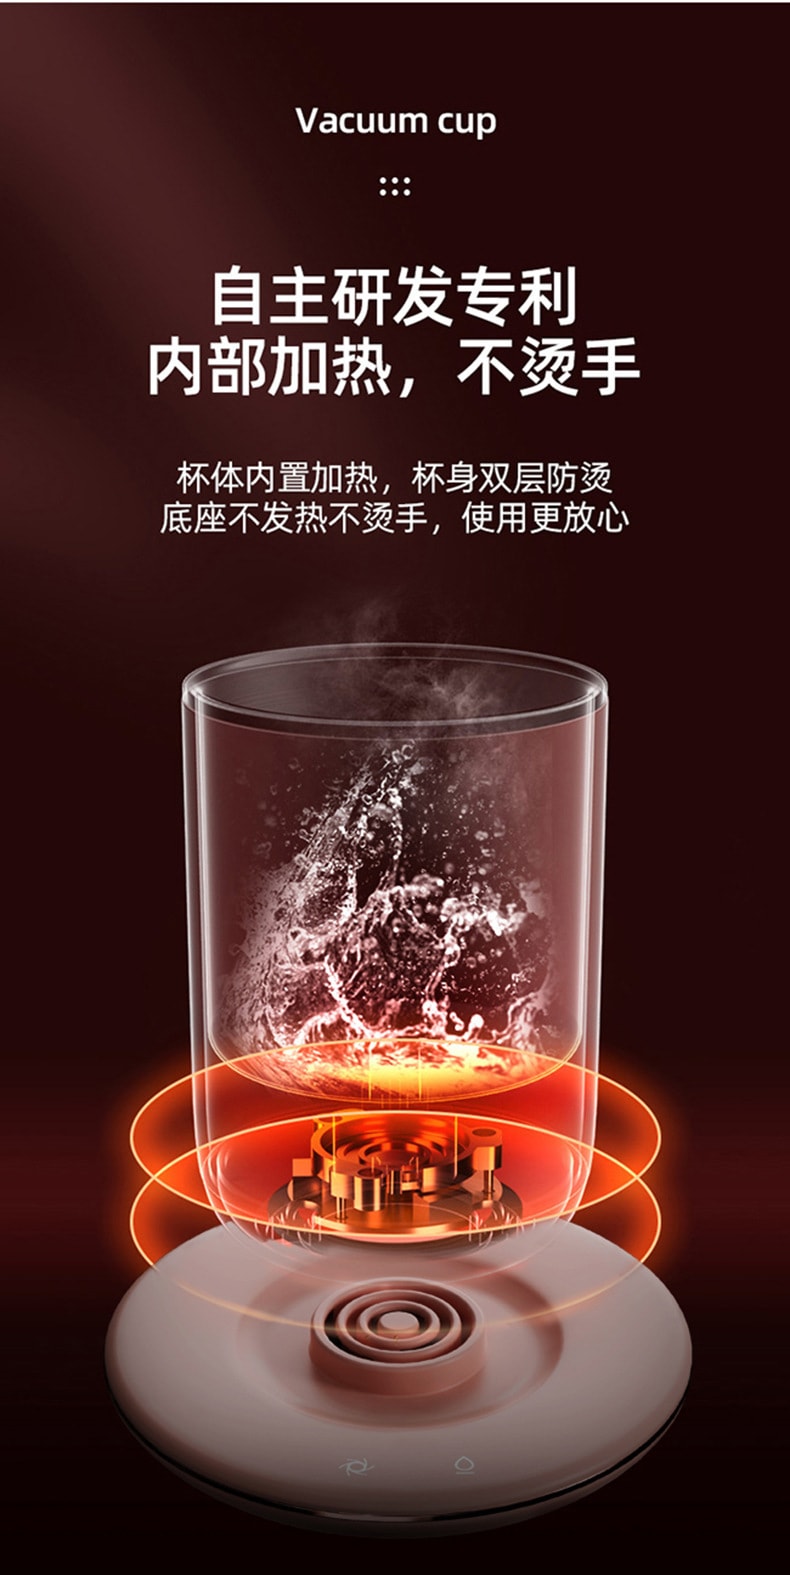 中国直邮 VIMI 自动搅拌杯300ml双层55度恒温电动搅拌咖啡杯不锈钢早餐保温杯 白色